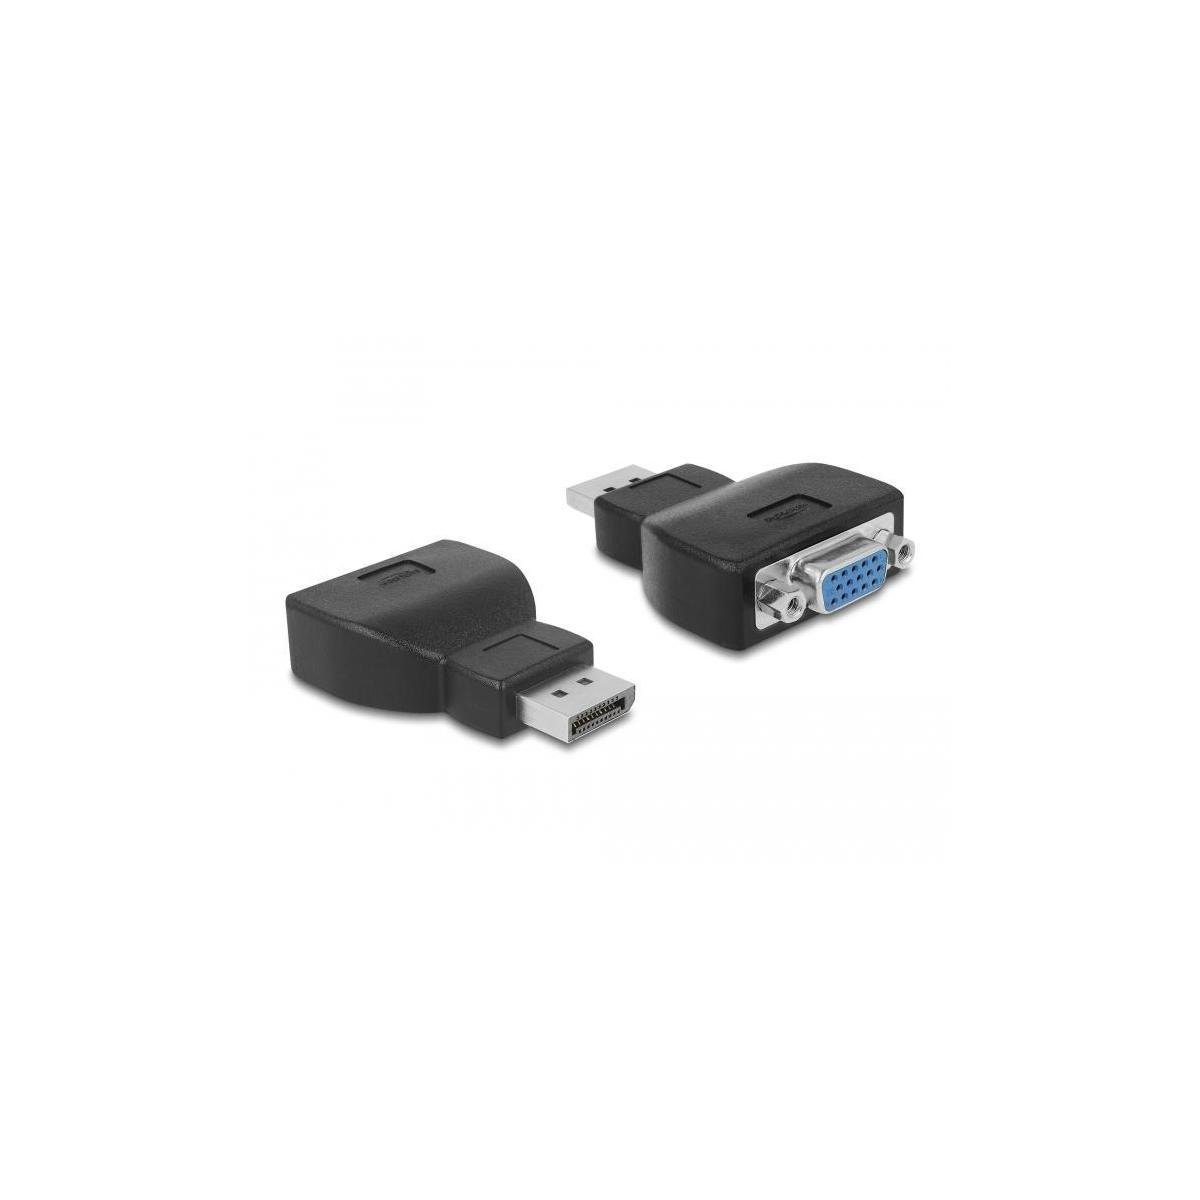 Delock 65567 - Adapter DisplayPort 1.2 Stecker zu VGA Buchse schwarz Computer-Kabel, Display Port, DisplayPort